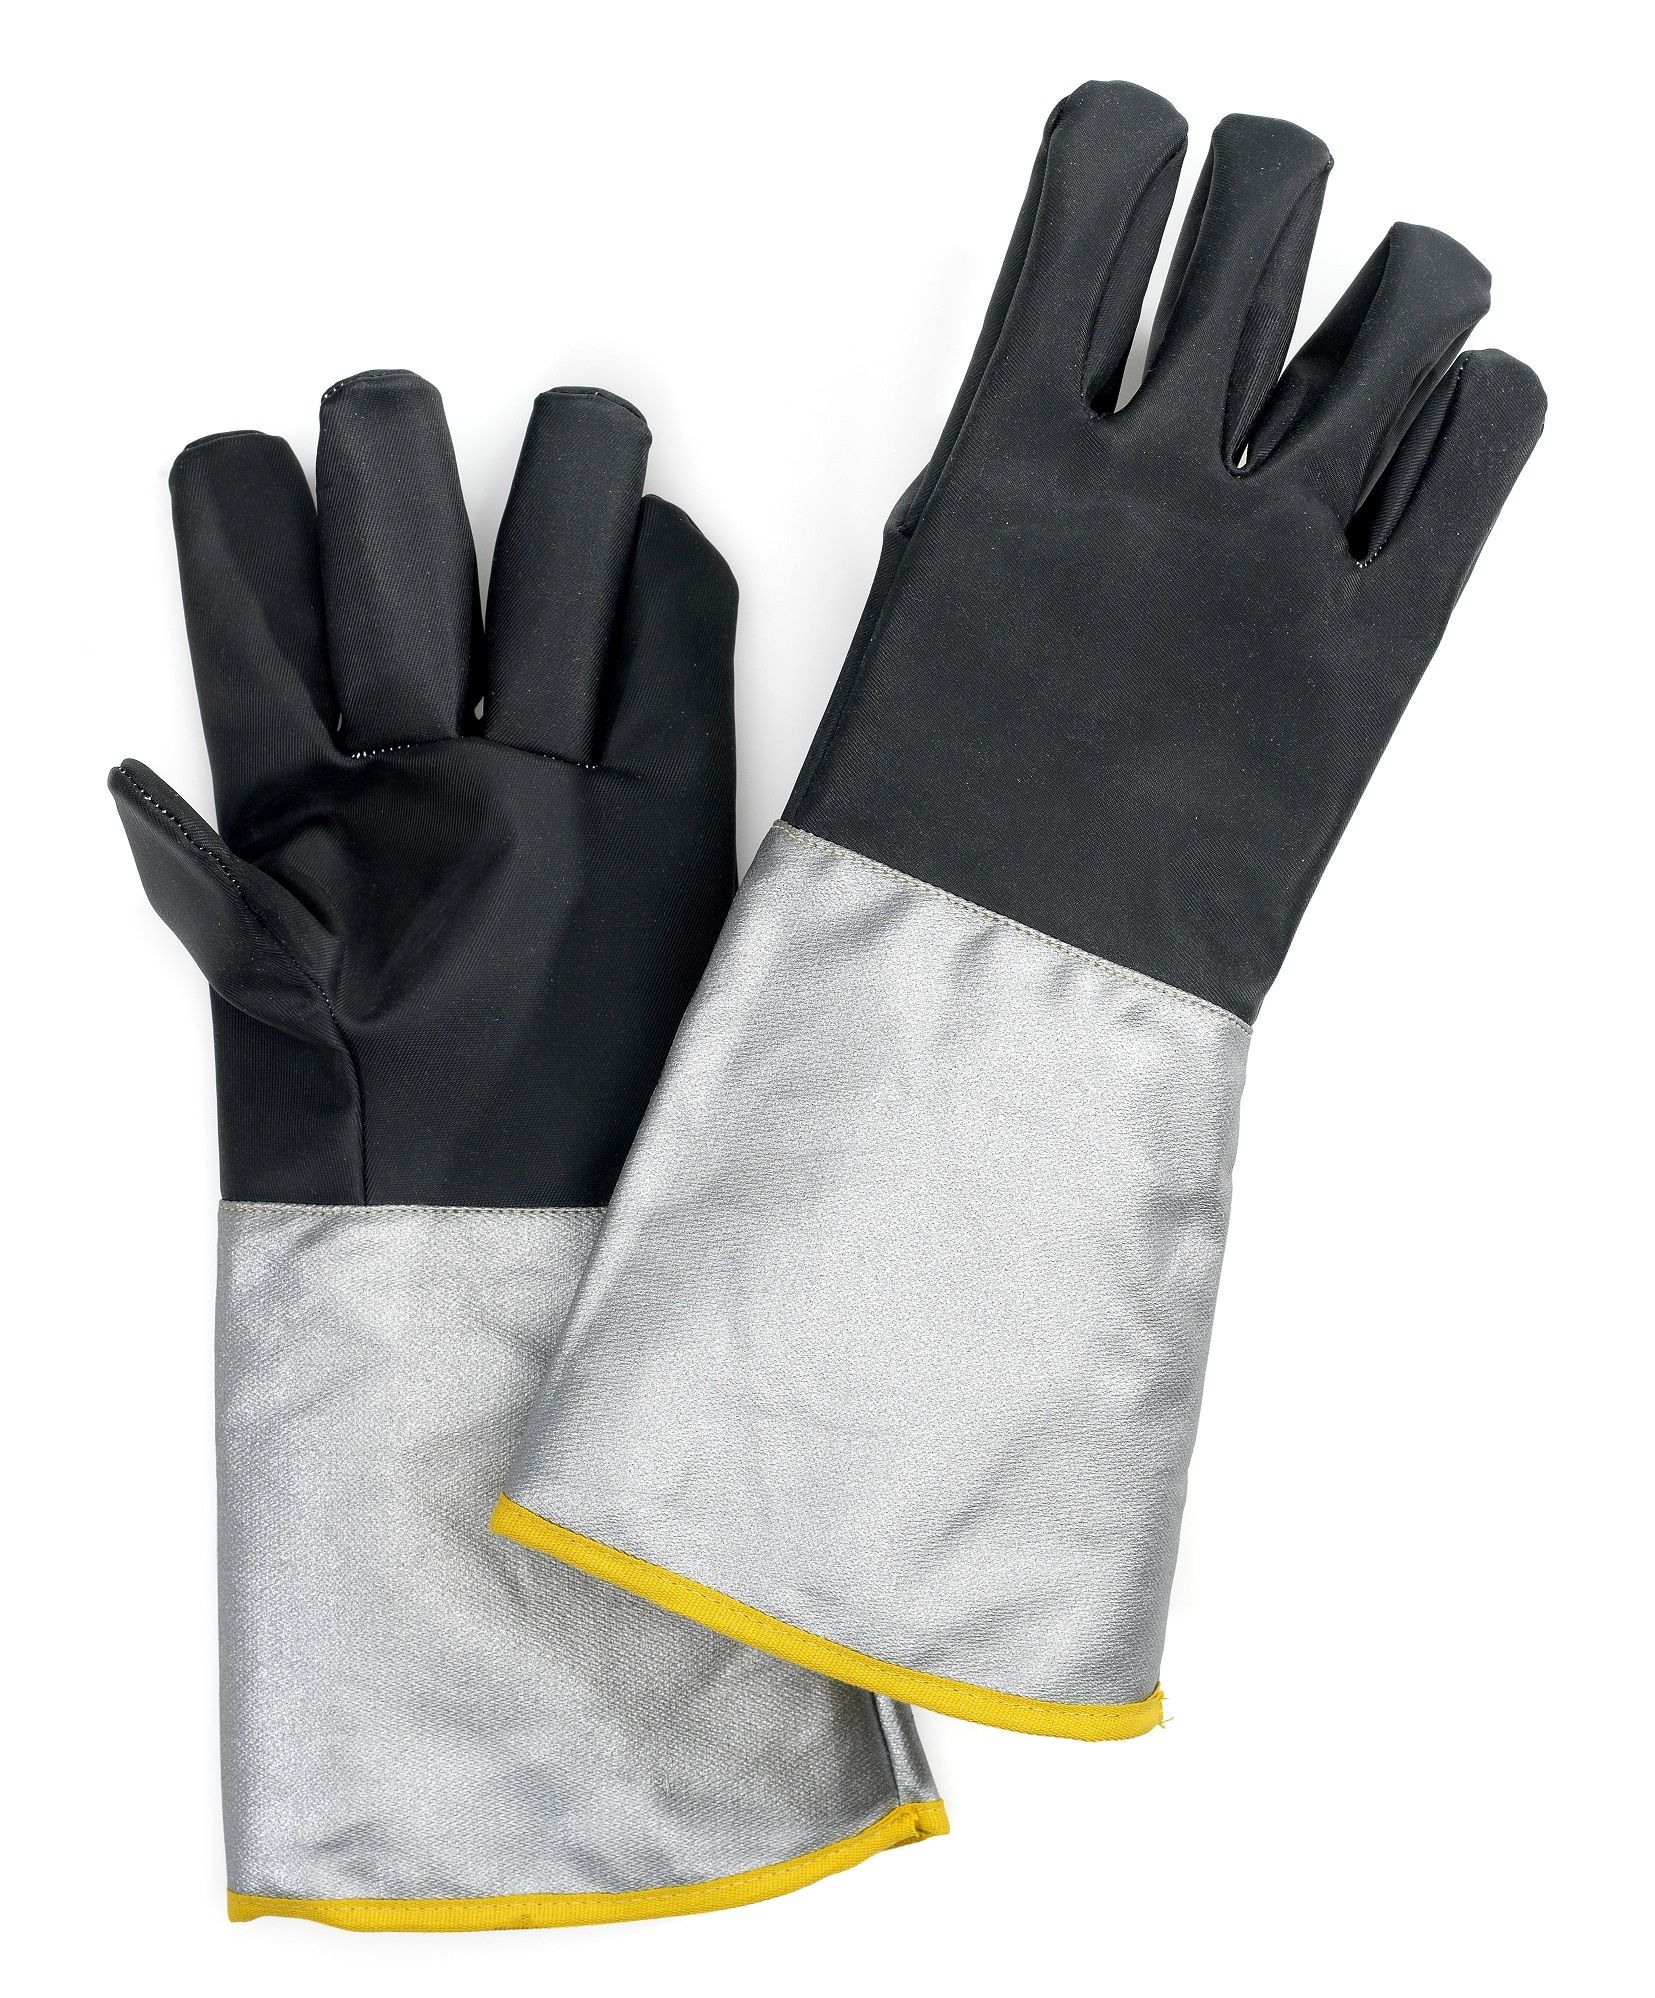 gants anti-chaleur hellopro